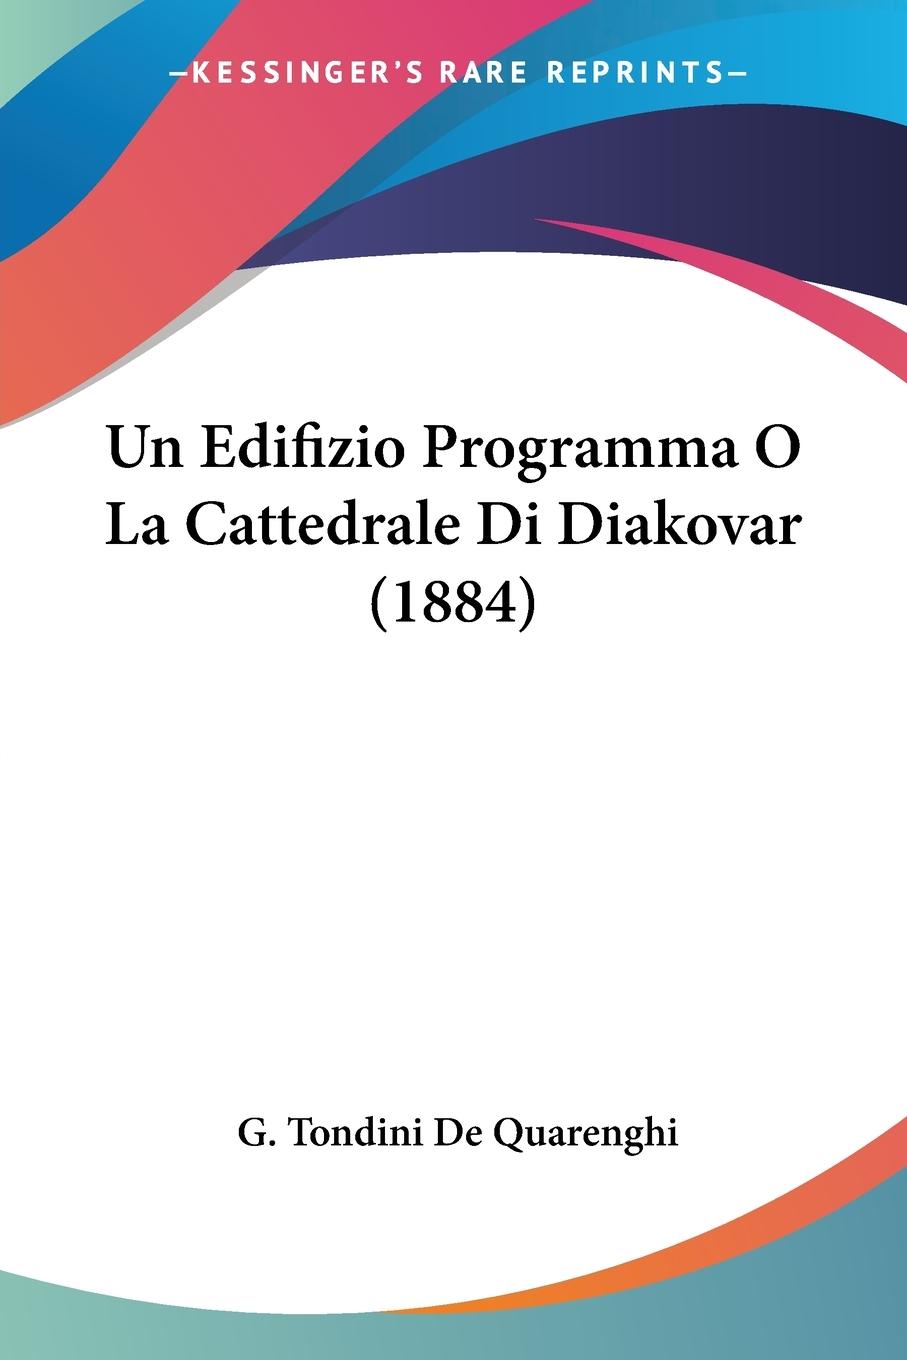 Un Edifizio Programma O La Cattedrale Di Diakovar (1884) - De Quarenghi, G. Tondini